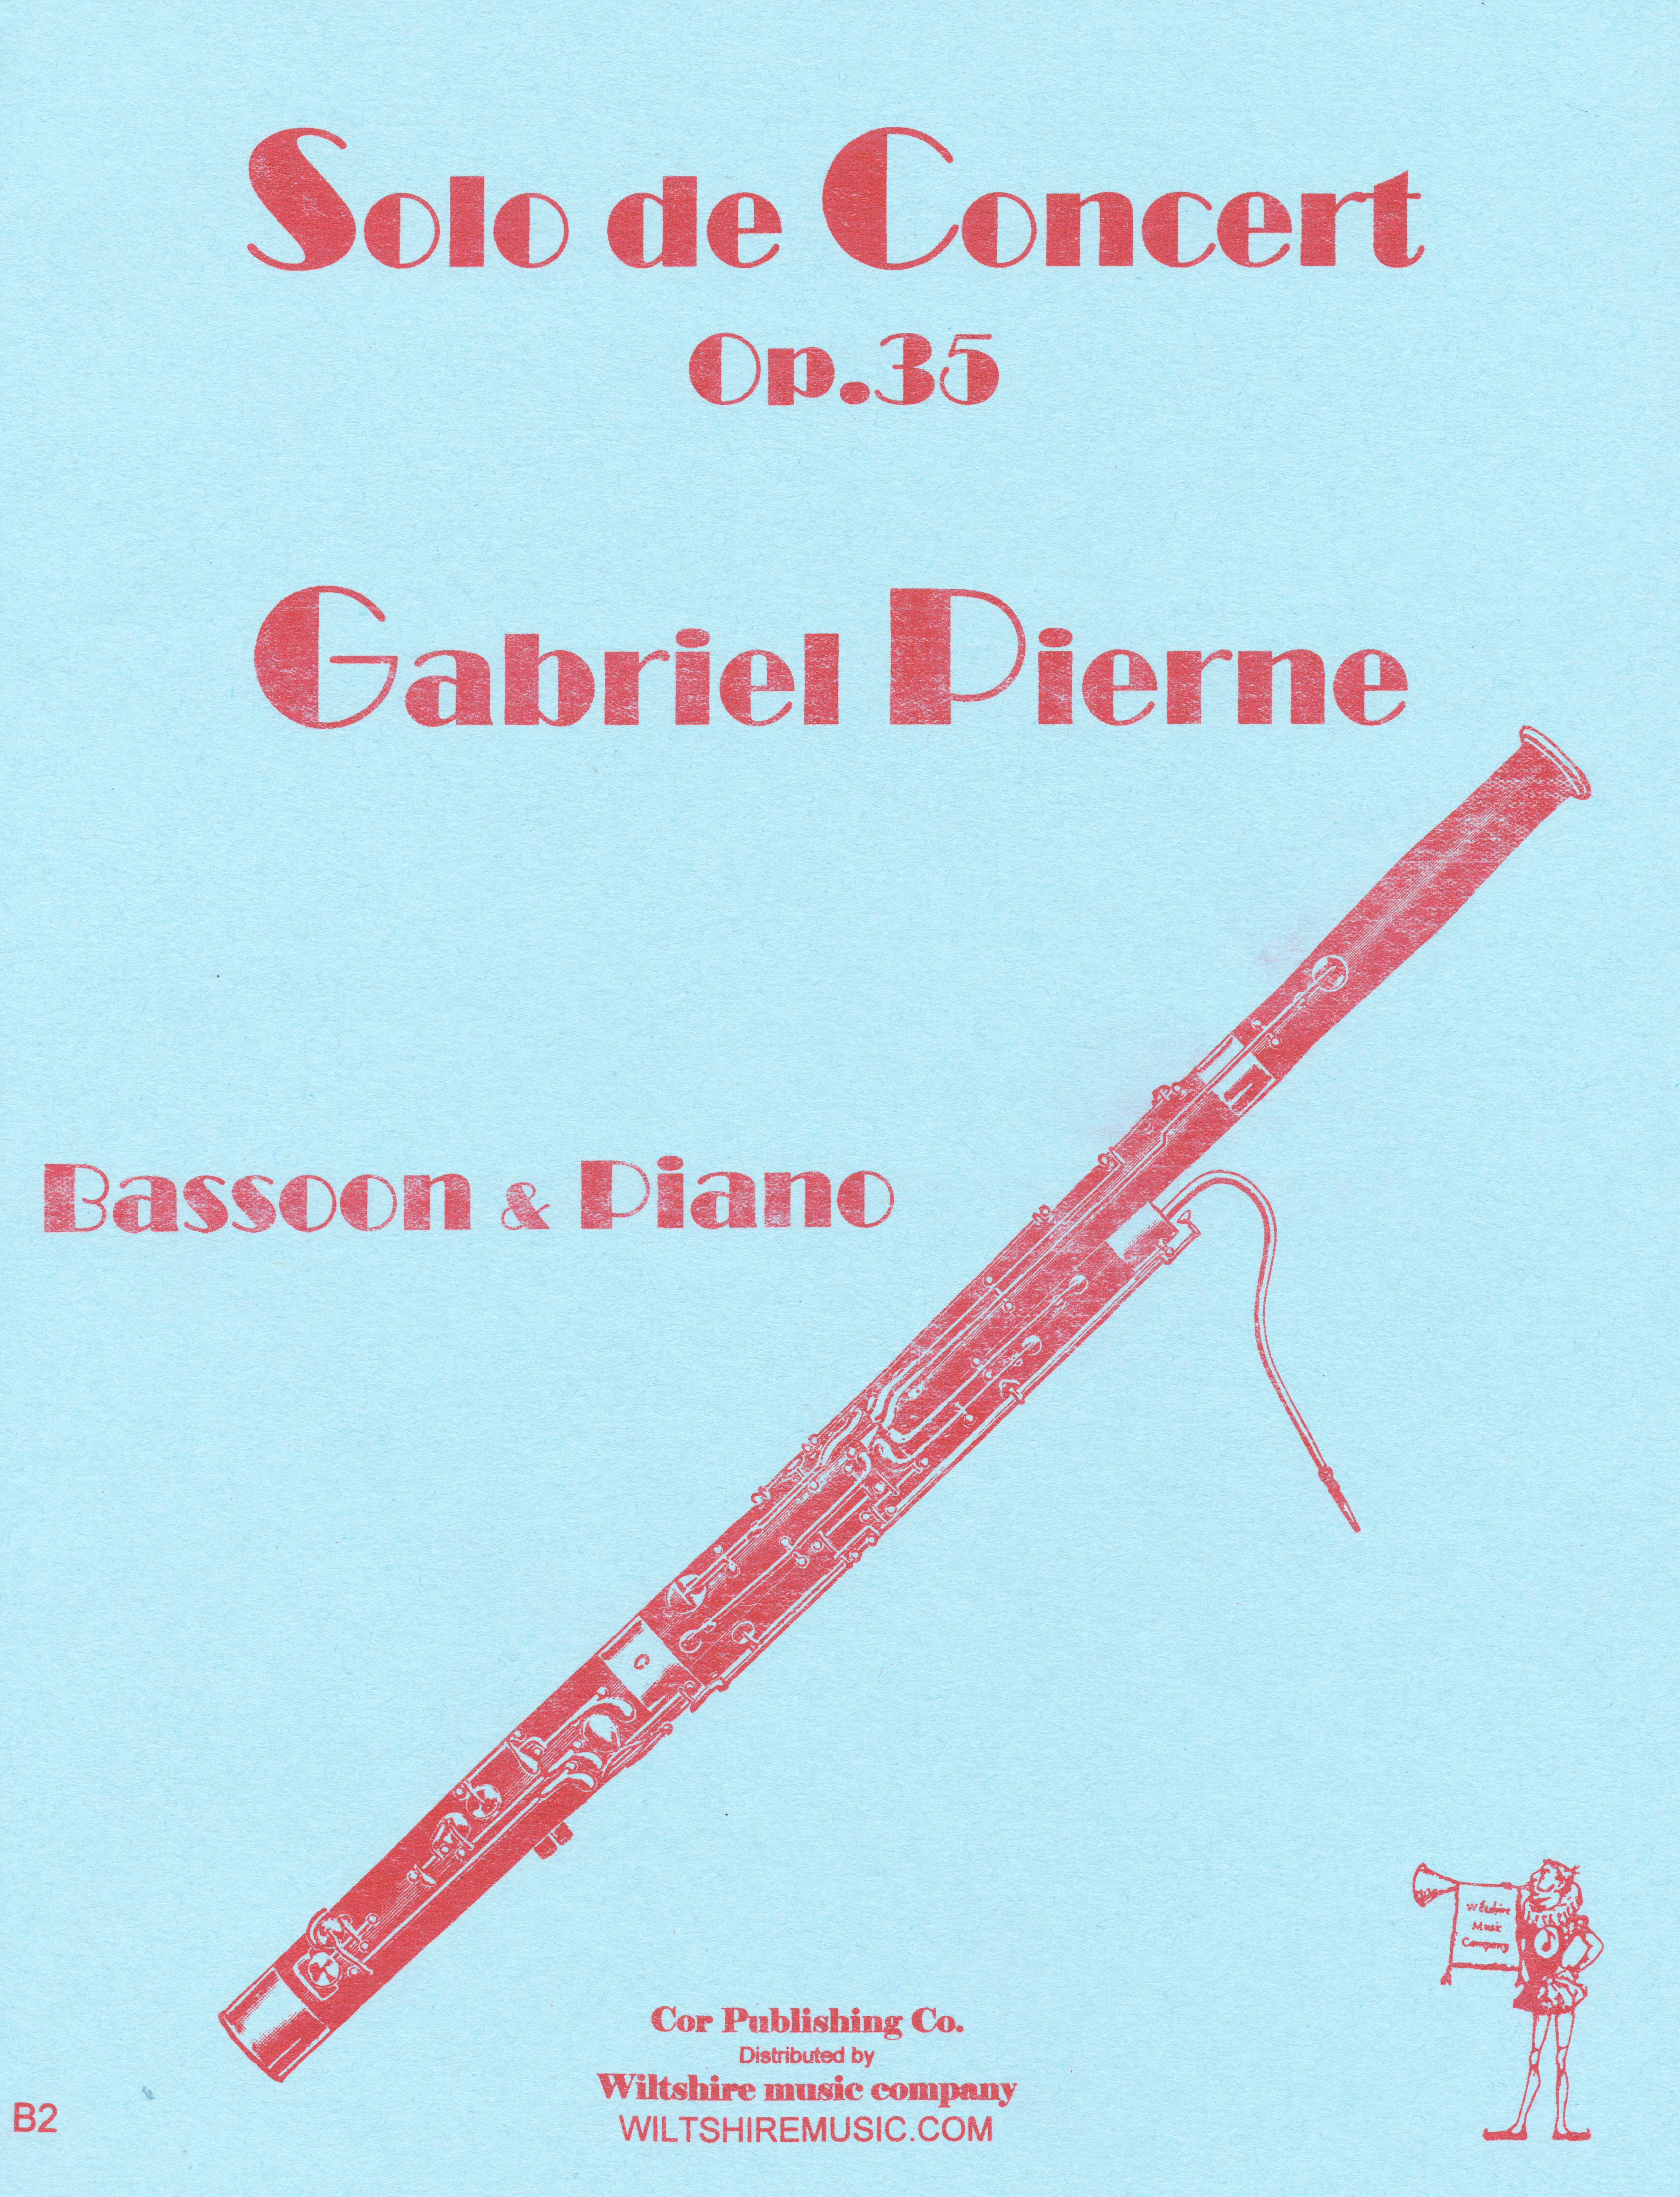 Solo de Concert, G. Pierne, bassoon & piano